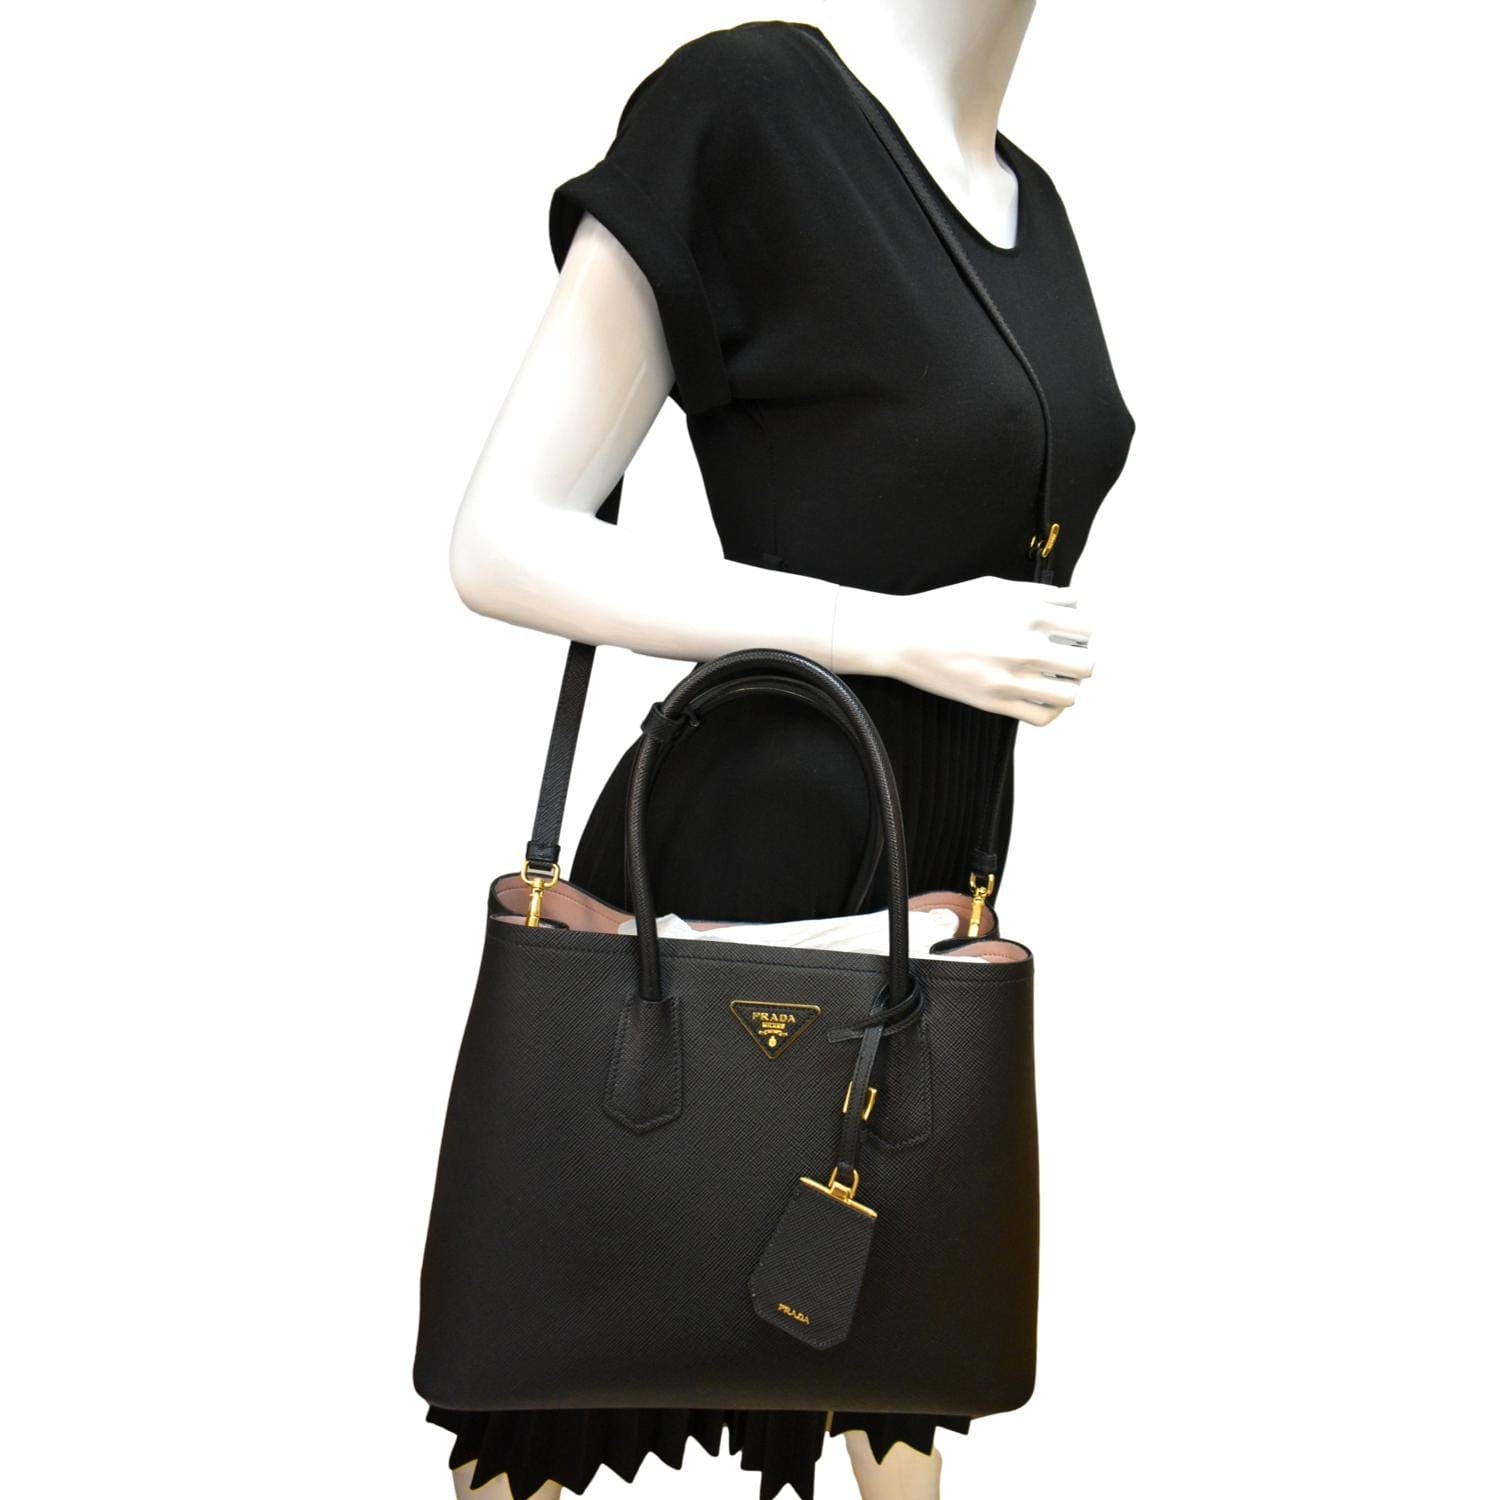 Prada, Bags, Medium Saffiano Leather Double Prada Bag